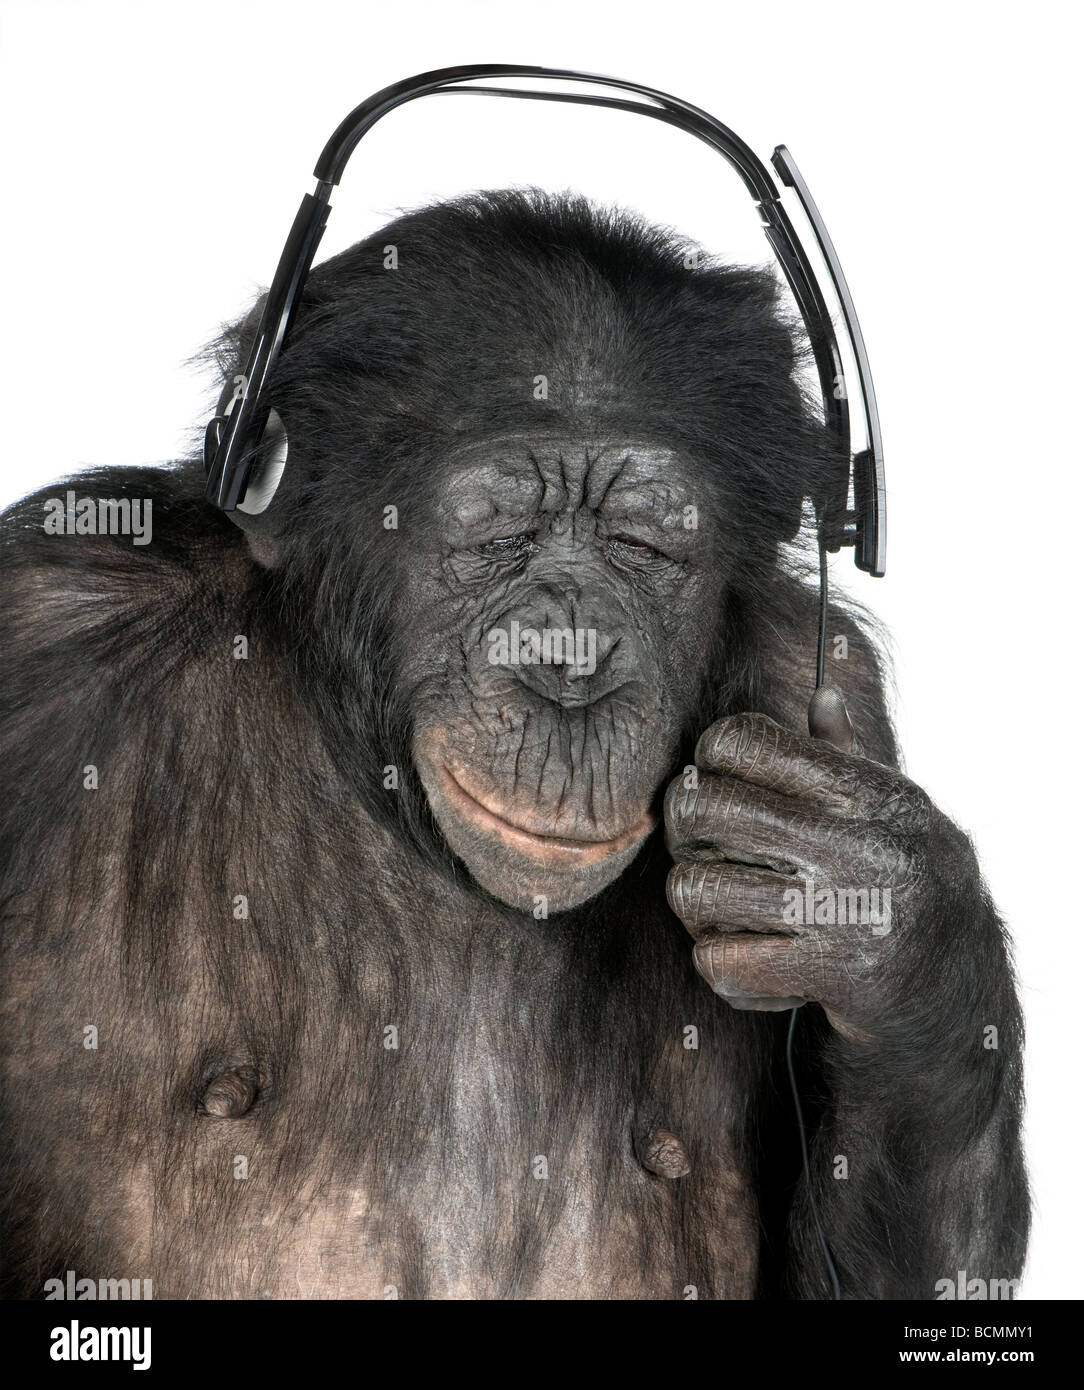 Mono, de raza mixta entre el chimpancé y el bonobo, de 20 años, escuchando música con los auriculares en la parte delantera del fondo blanco. Foto de stock